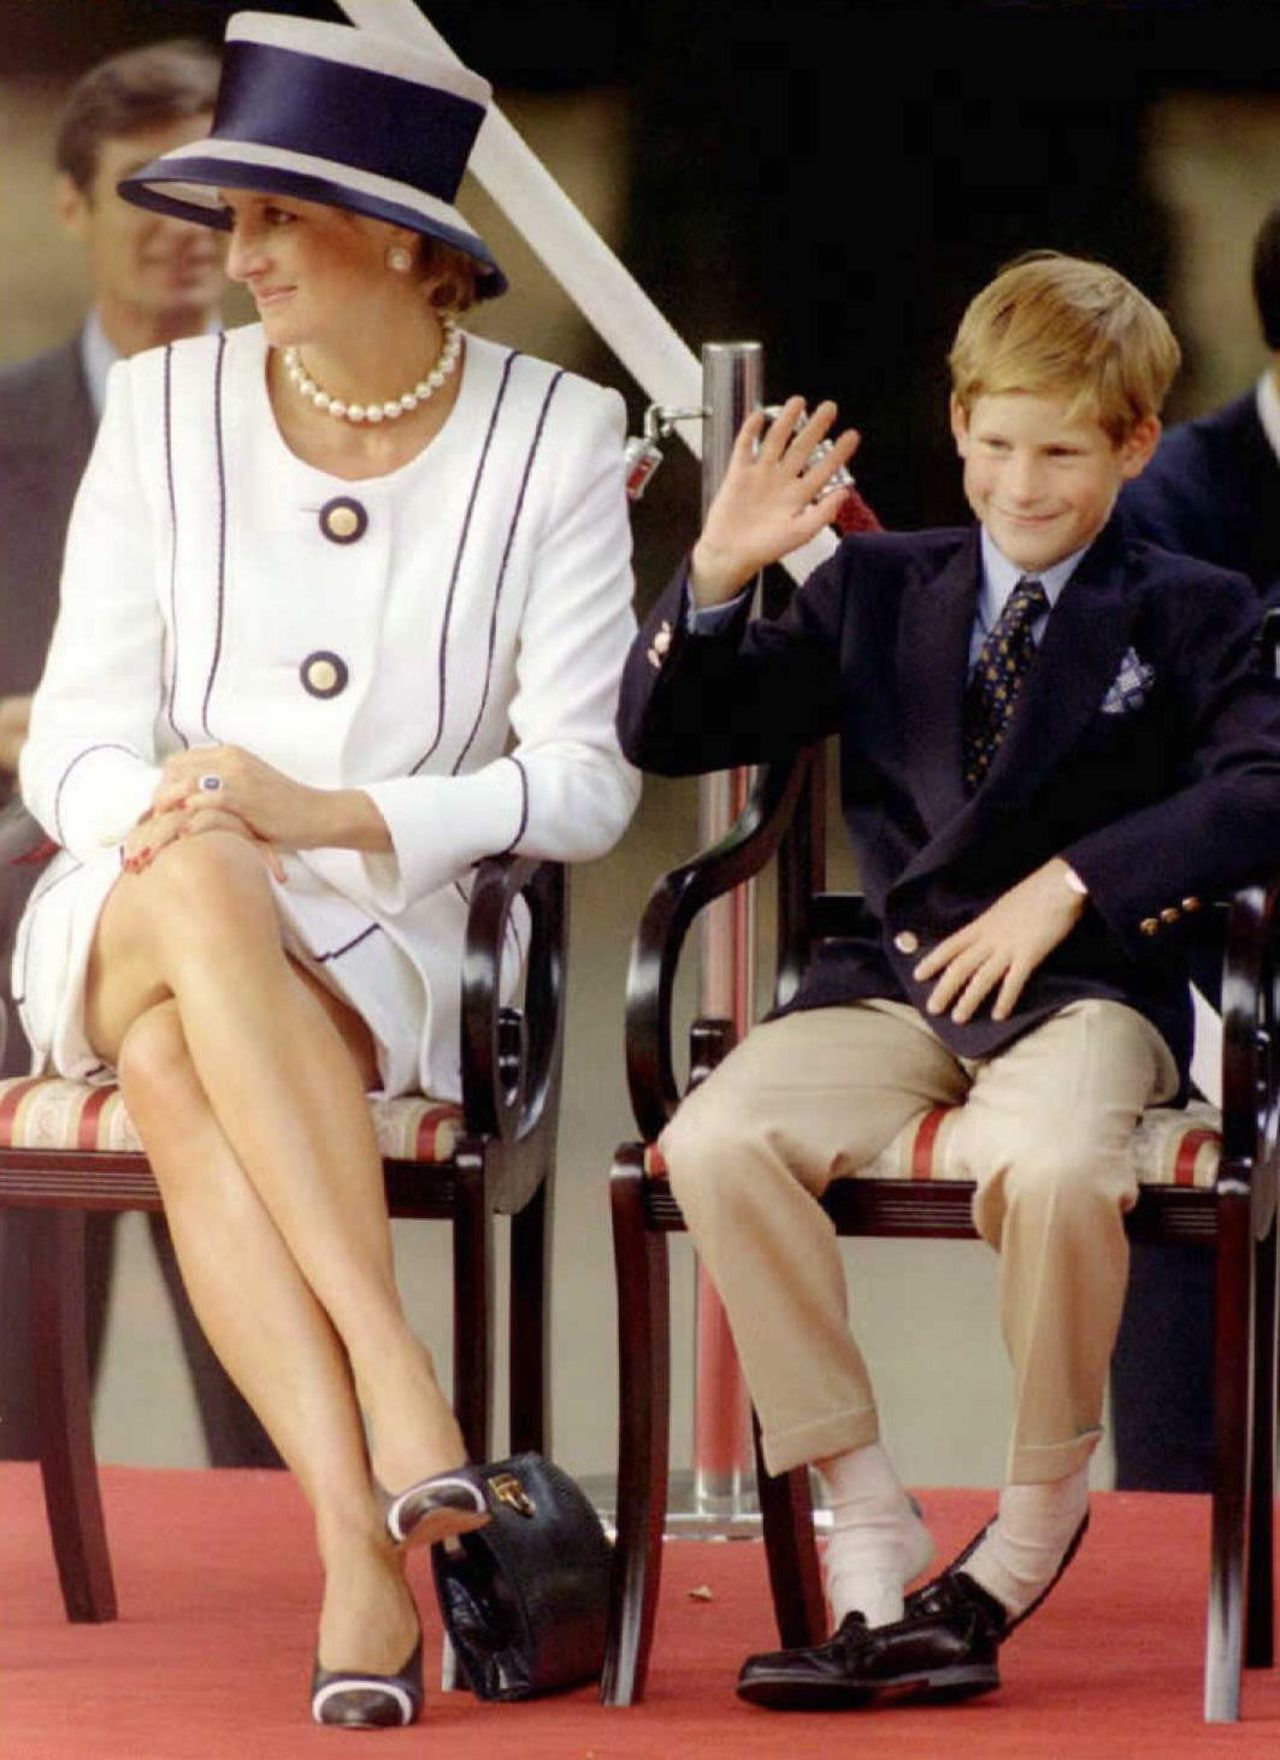 En vida, subastó prendas de vestir para apoyar obras benéficas relacionadas a pacientes con VIH y cáncer. En esta imagen, aparece con su hijo, el príncipe Harry durante las conmemoraciones de la victoria sobre Japón.